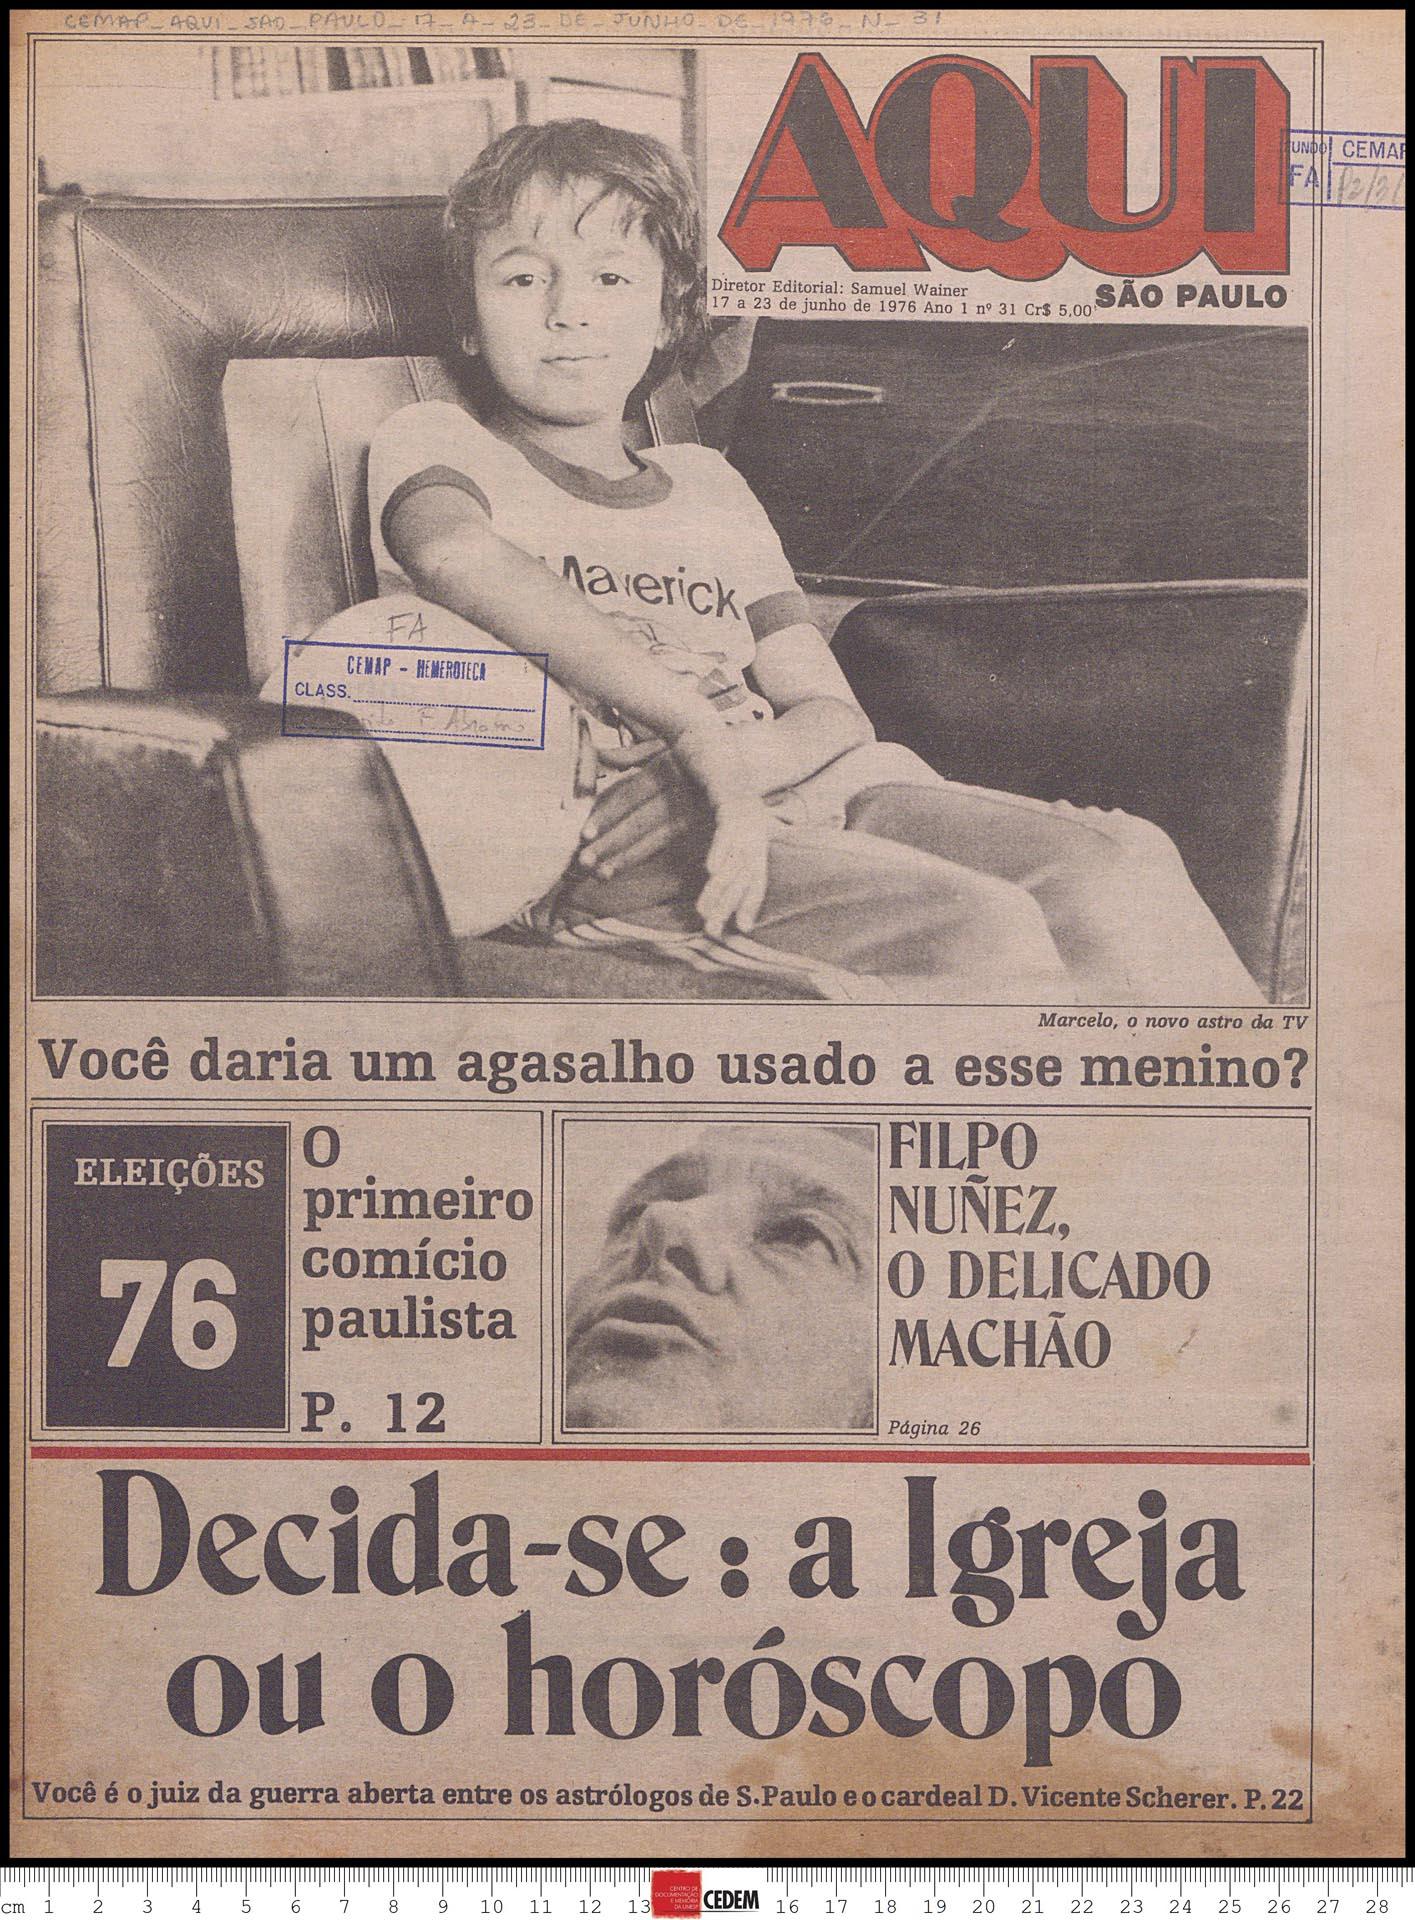 Aqui São Paulo - 17 a 23 de junho de 1976 n 31